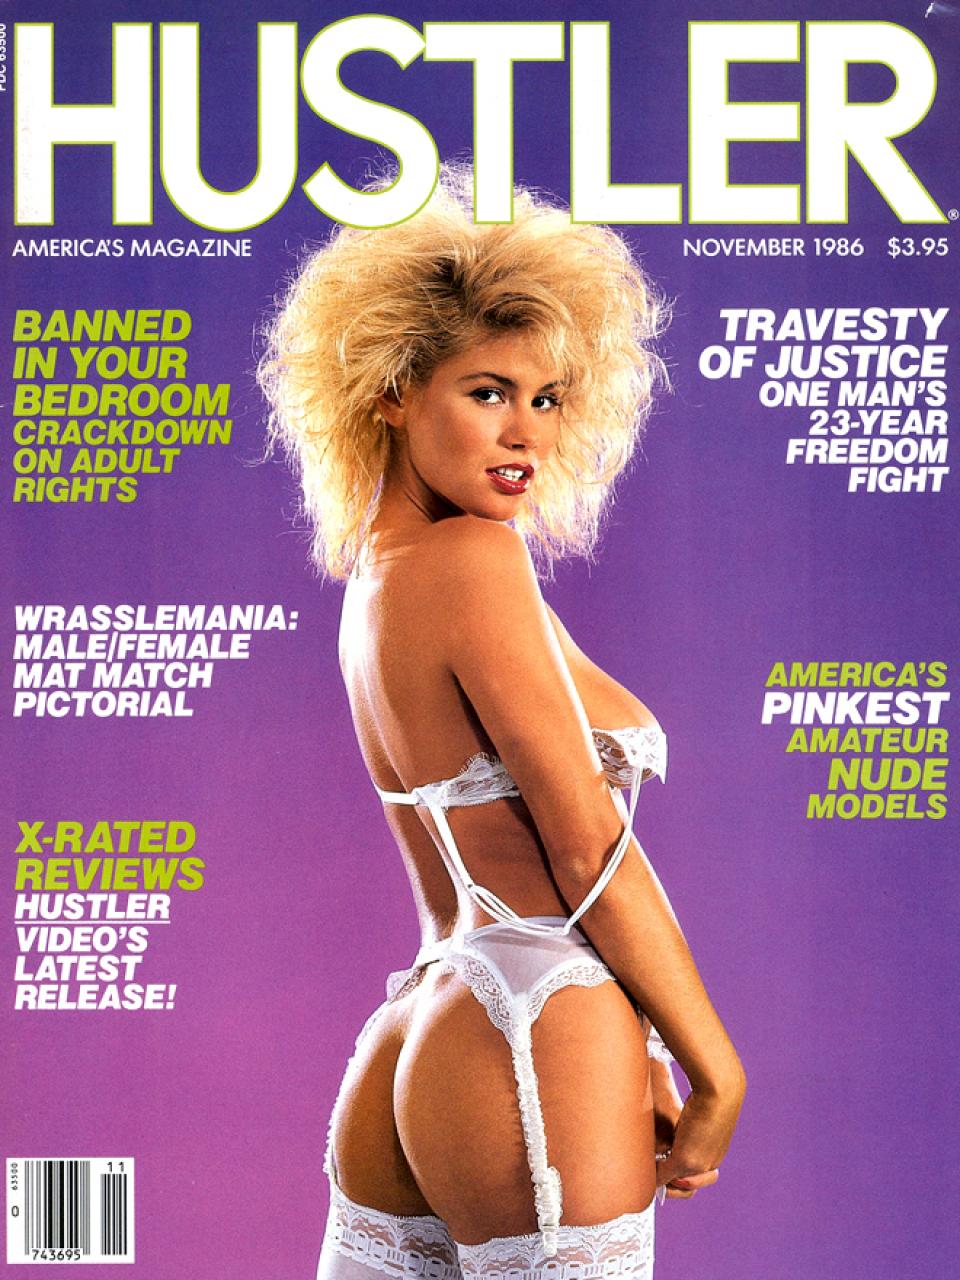 November 1986 - HUSTLER Magazine.